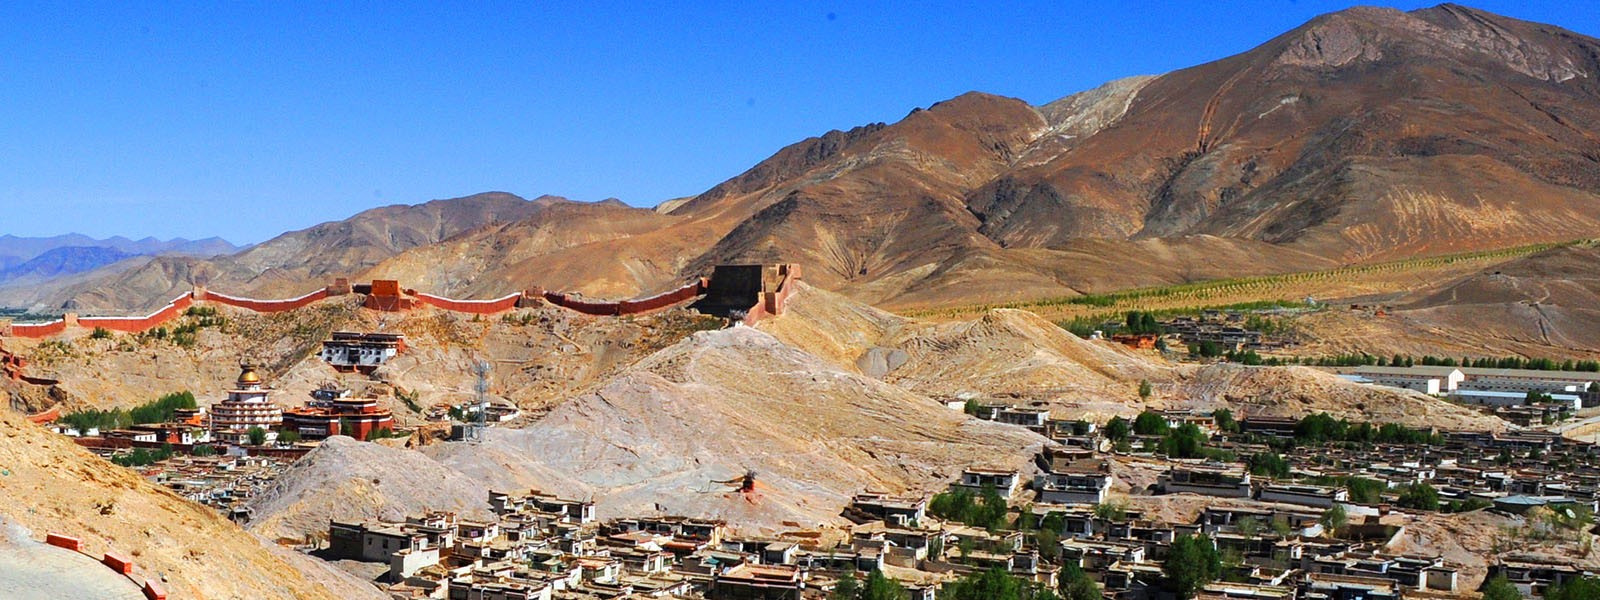 Lhasa Day Tours in Tibet